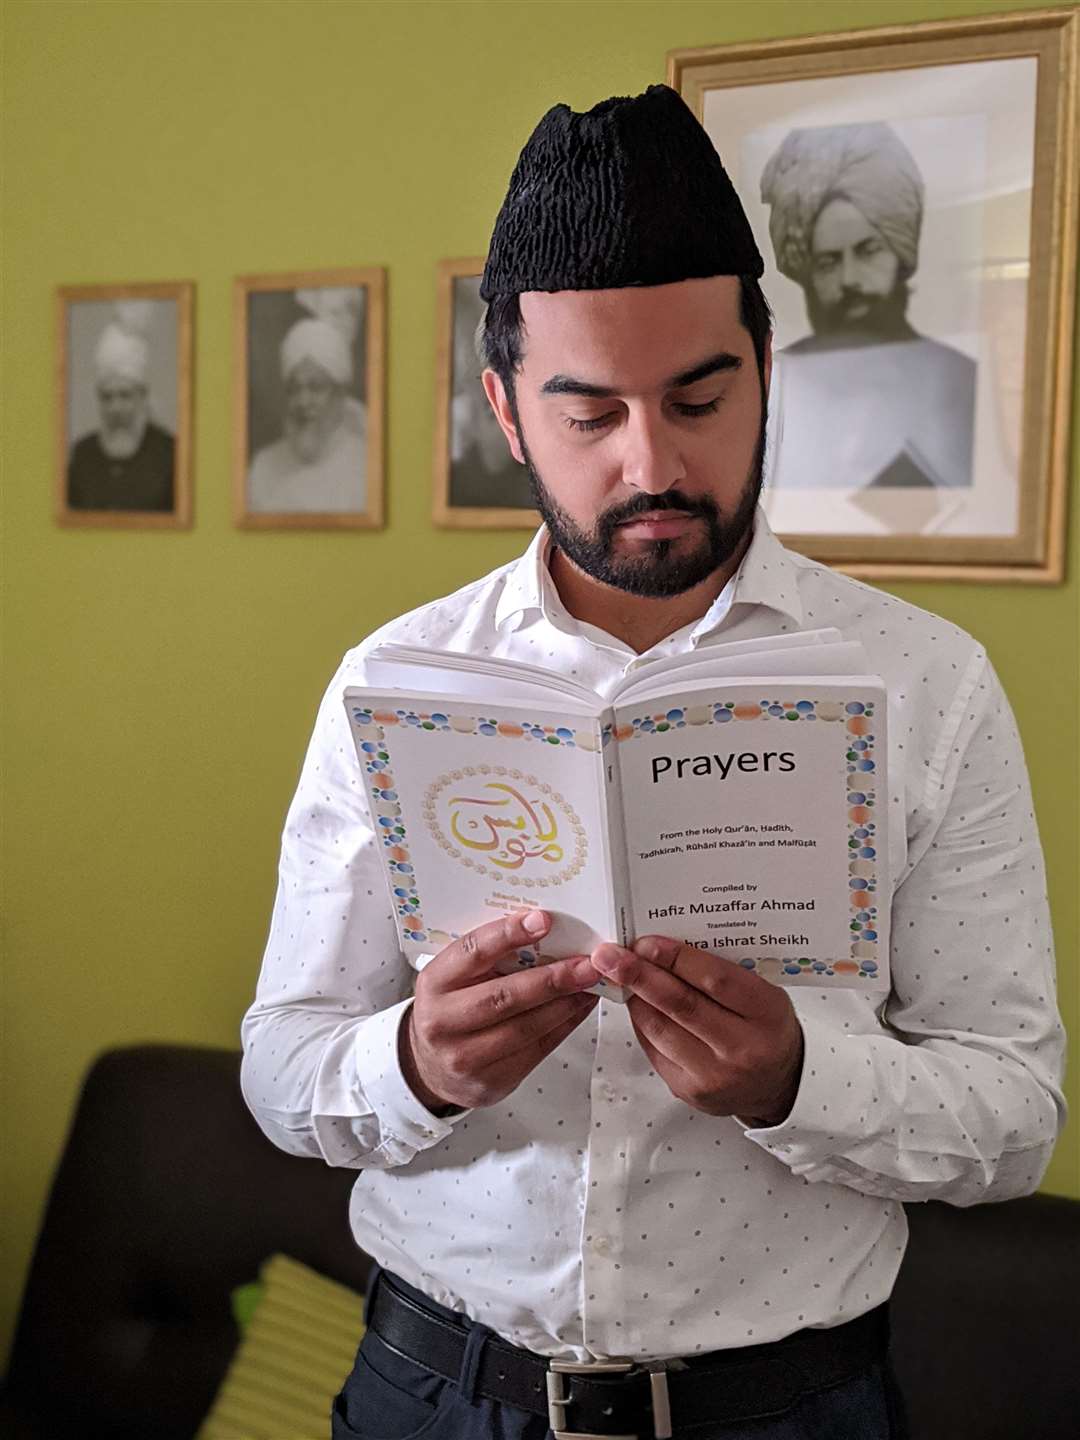 Safeer Khan conducting an online prayer